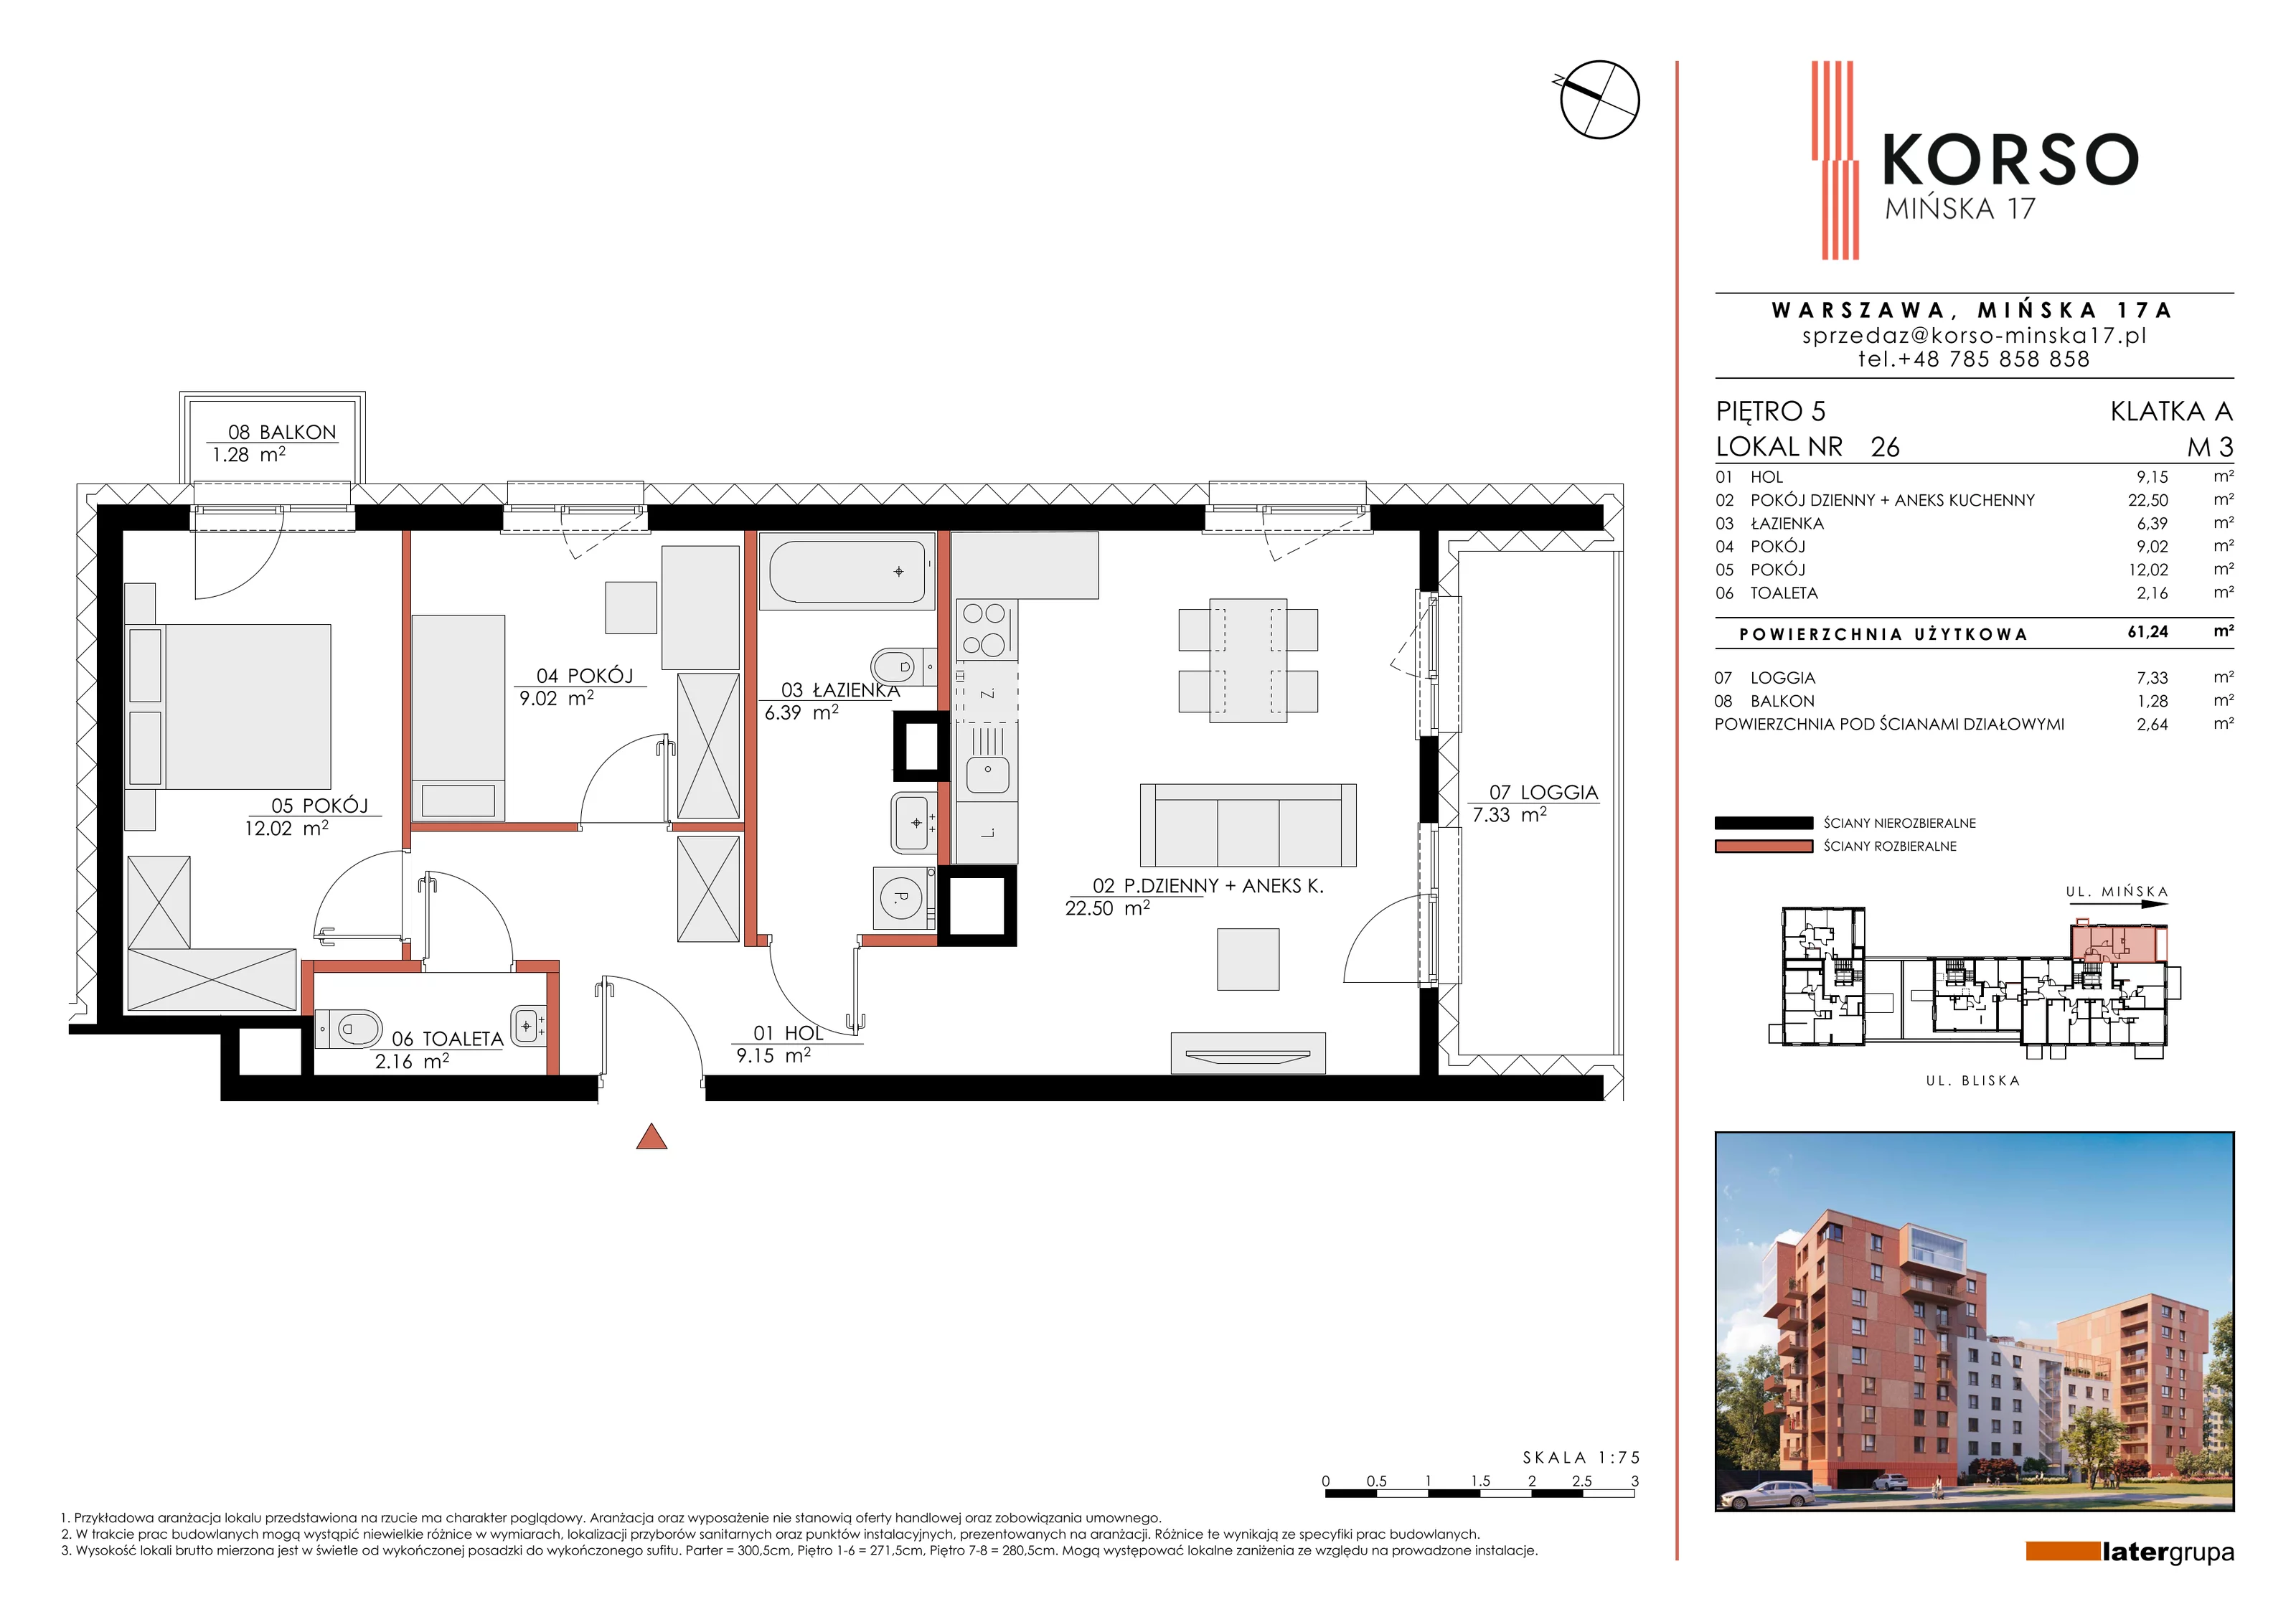 Mieszkanie 61,24 m², piętro 5, oferta nr 26, KORSO Mińska 17, Warszawa, Praga Południe, Kamionek, ul. Mińska 17